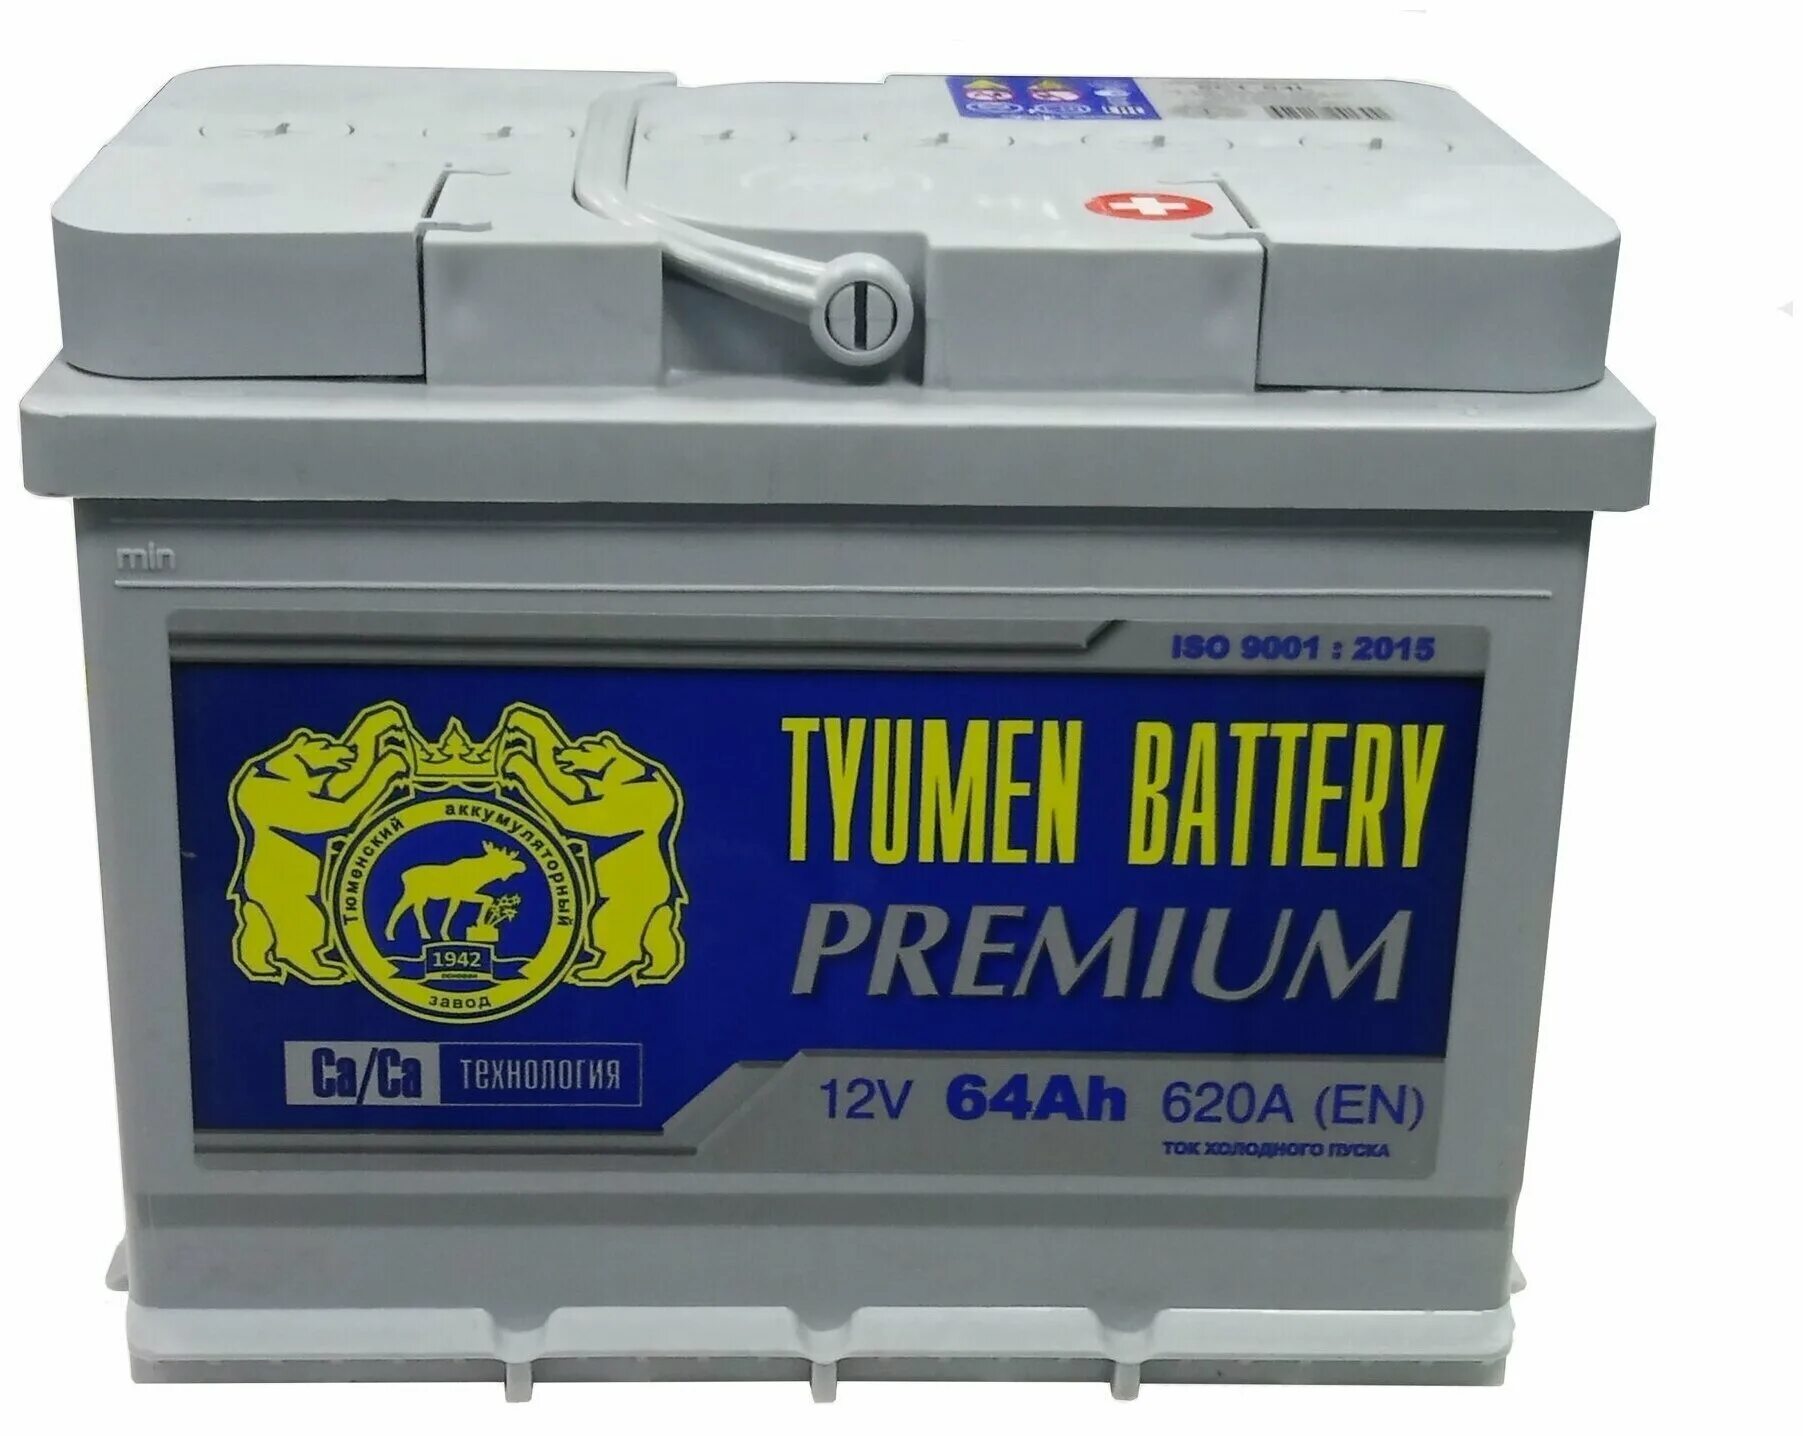 Тюмень батарея купить. Автомобильный аккумулятор Tyumen Battery Premium 6ст-64l 620а о.п. Автомобильный аккумулятор Tyumen Battery Premium 6ст-64l 620а 242х175х190. Tyumen Battery Premium 64 Ач. Аккумулятор 64 а/ч Tyumen Battery Premium 620a прямая полярность 242*175*190.